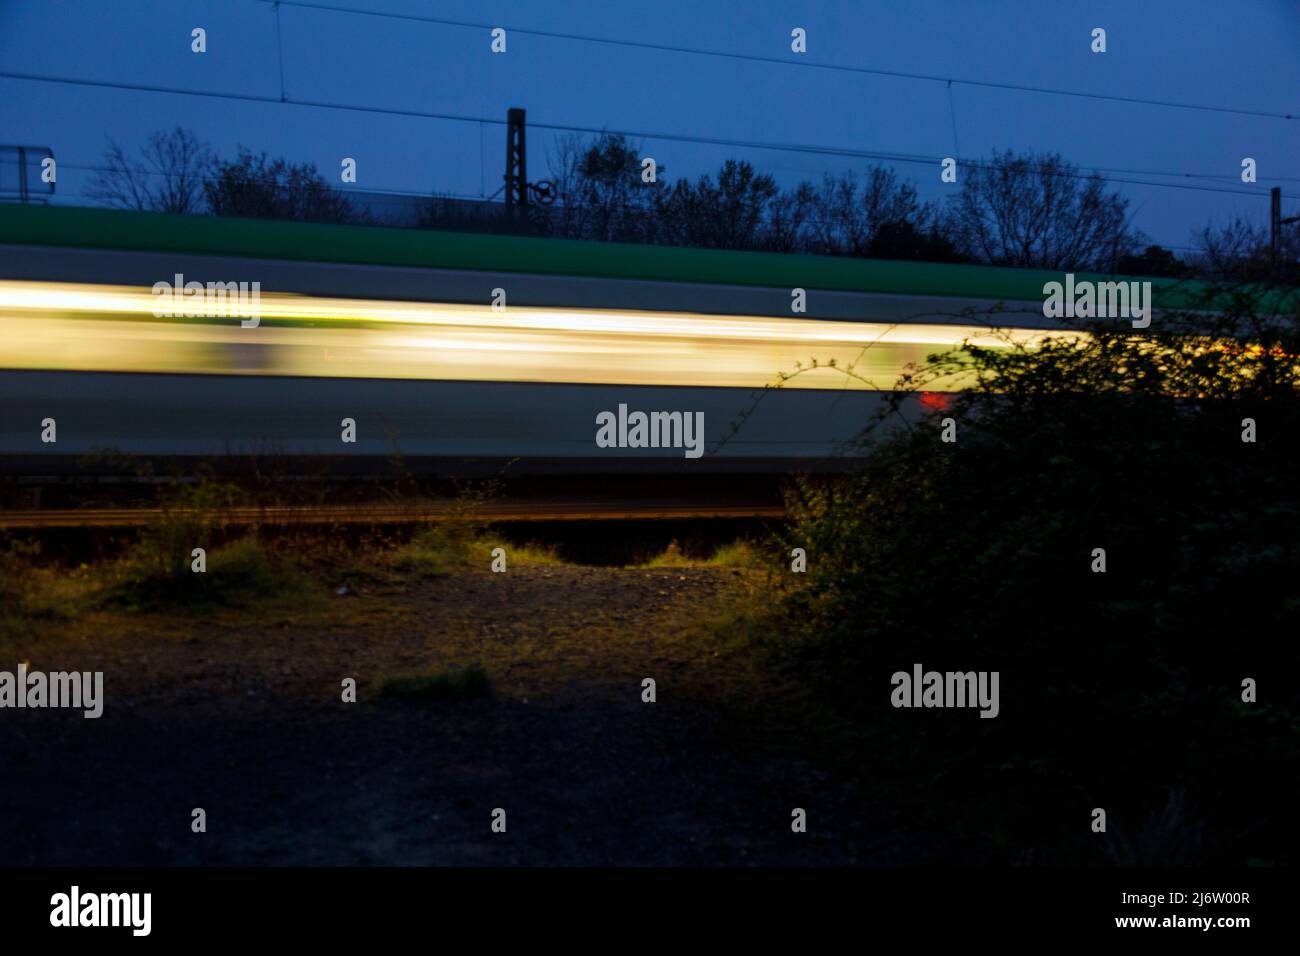 Fahrender Nachtzug der Bahn auf offener Strecke Stock Photo